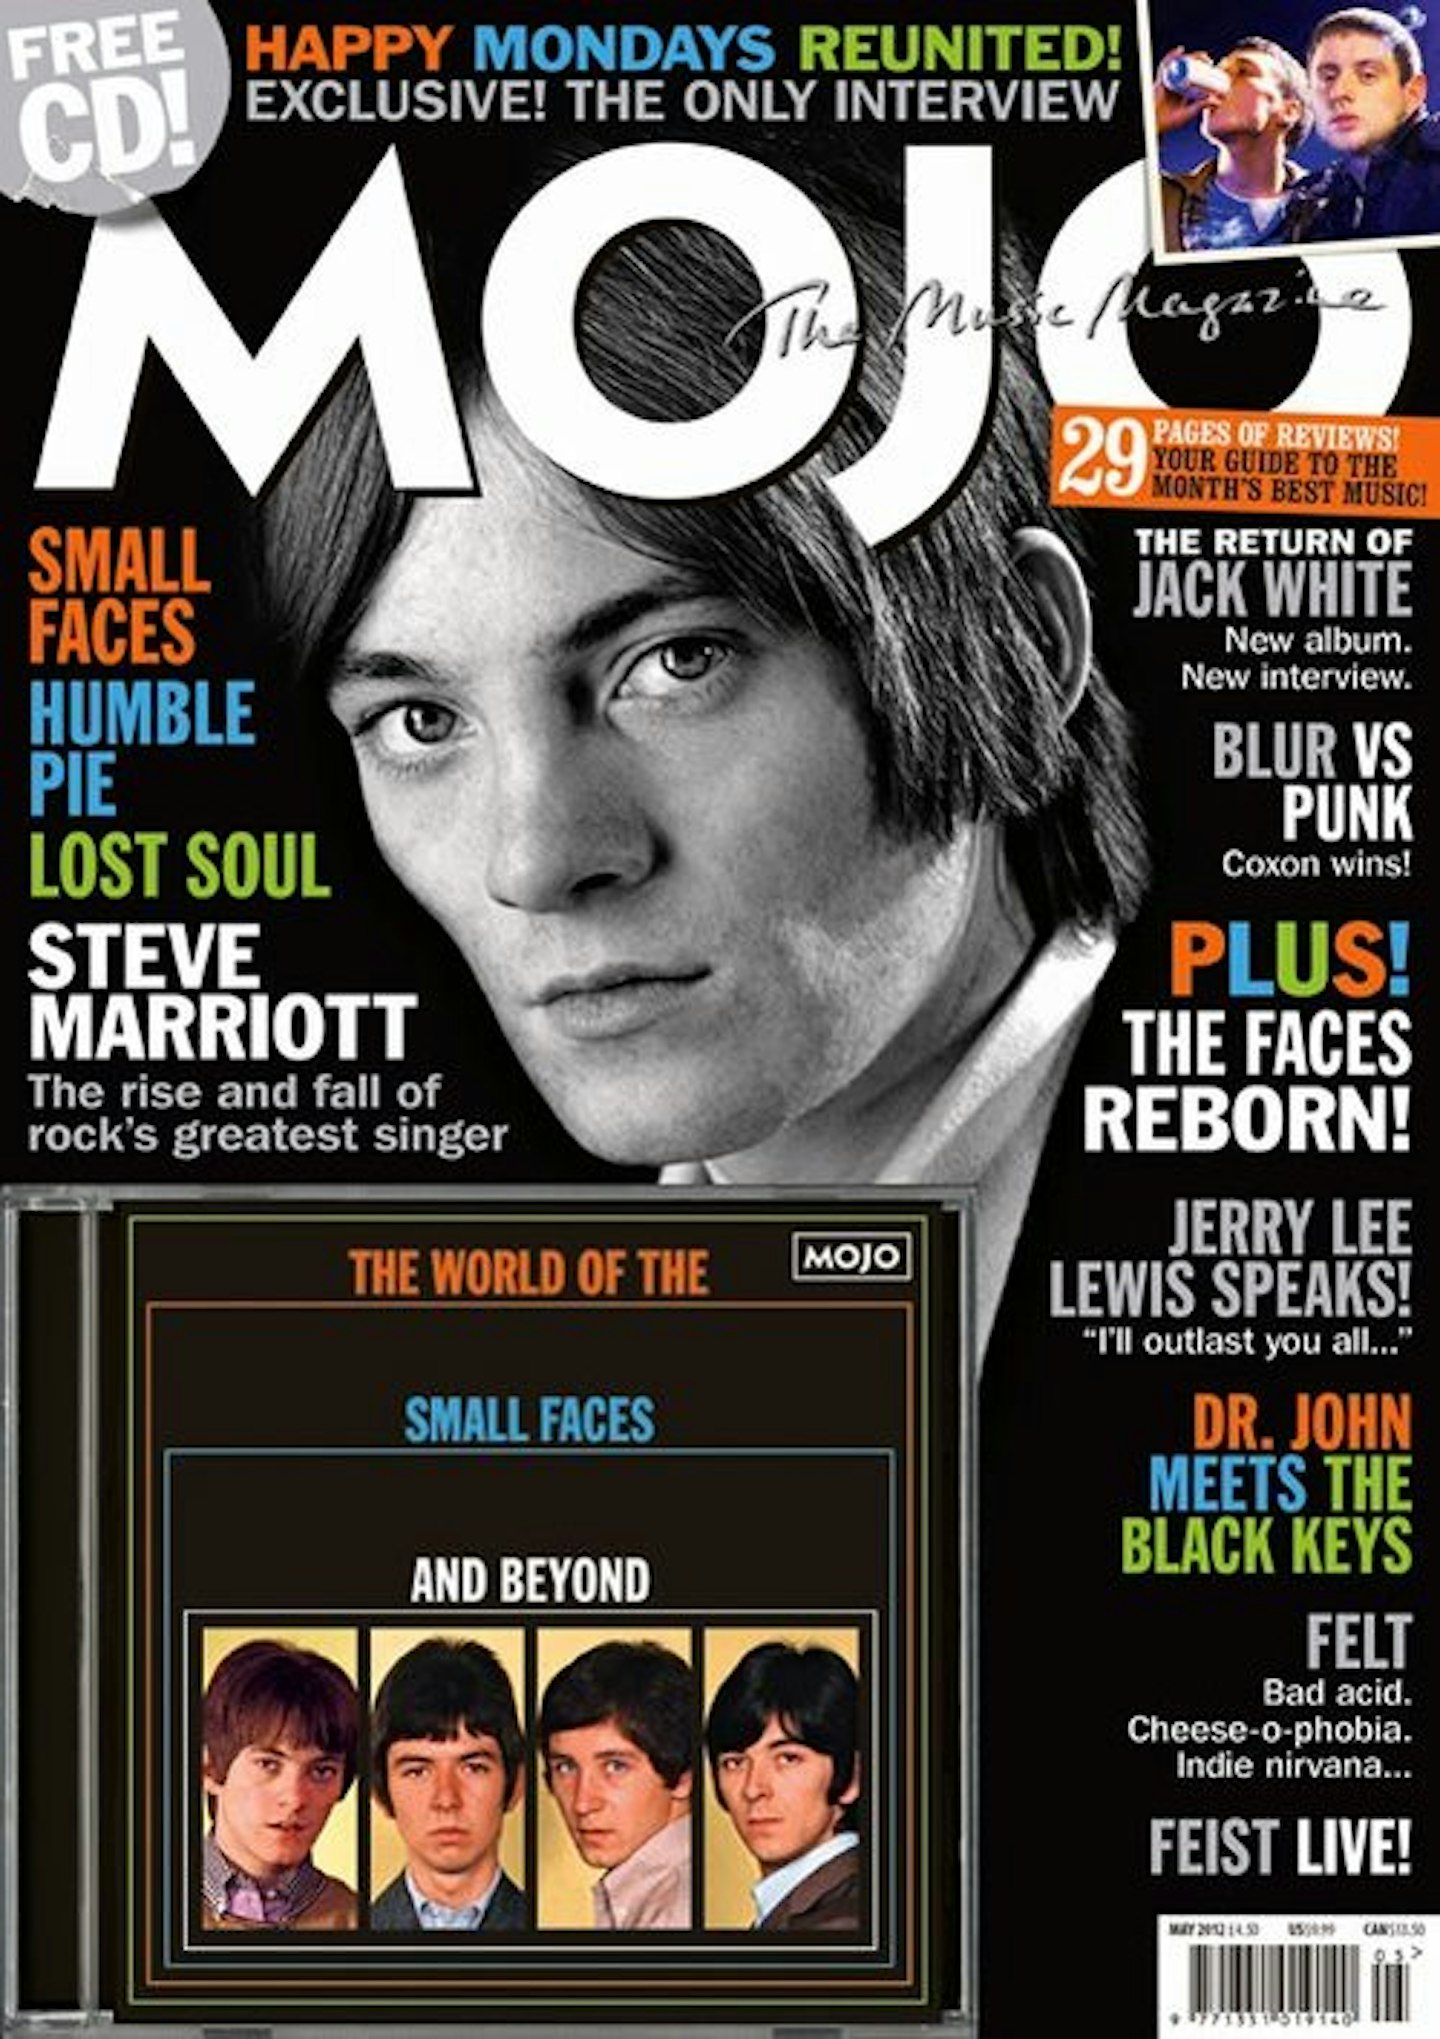 MOJO Issue 222 / May 2012